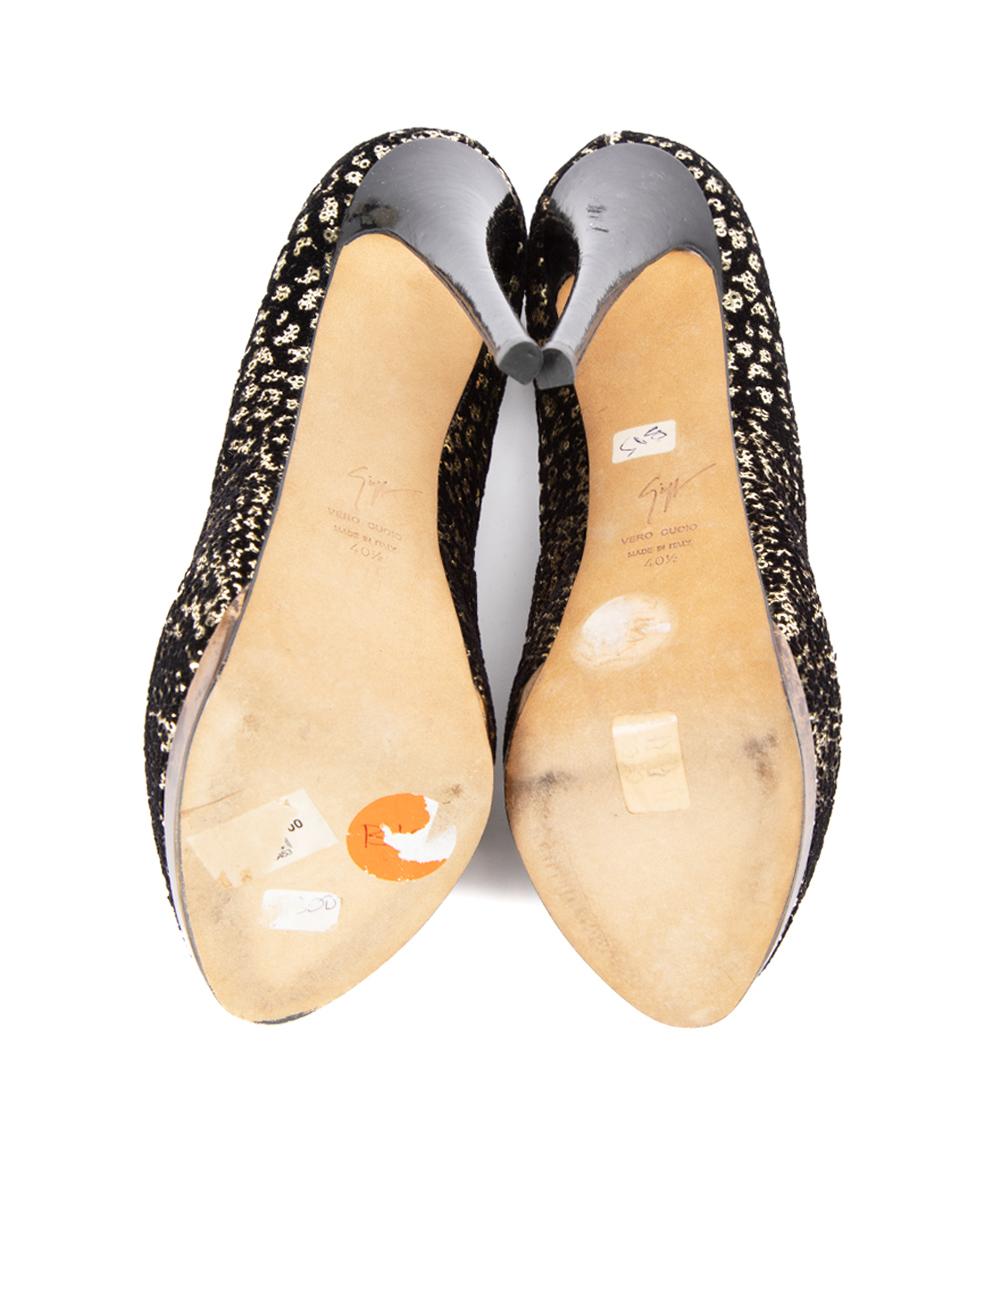 Giuseppe Zanotti Women's Black Velour Sequin Peep Toe Heels For Sale 1